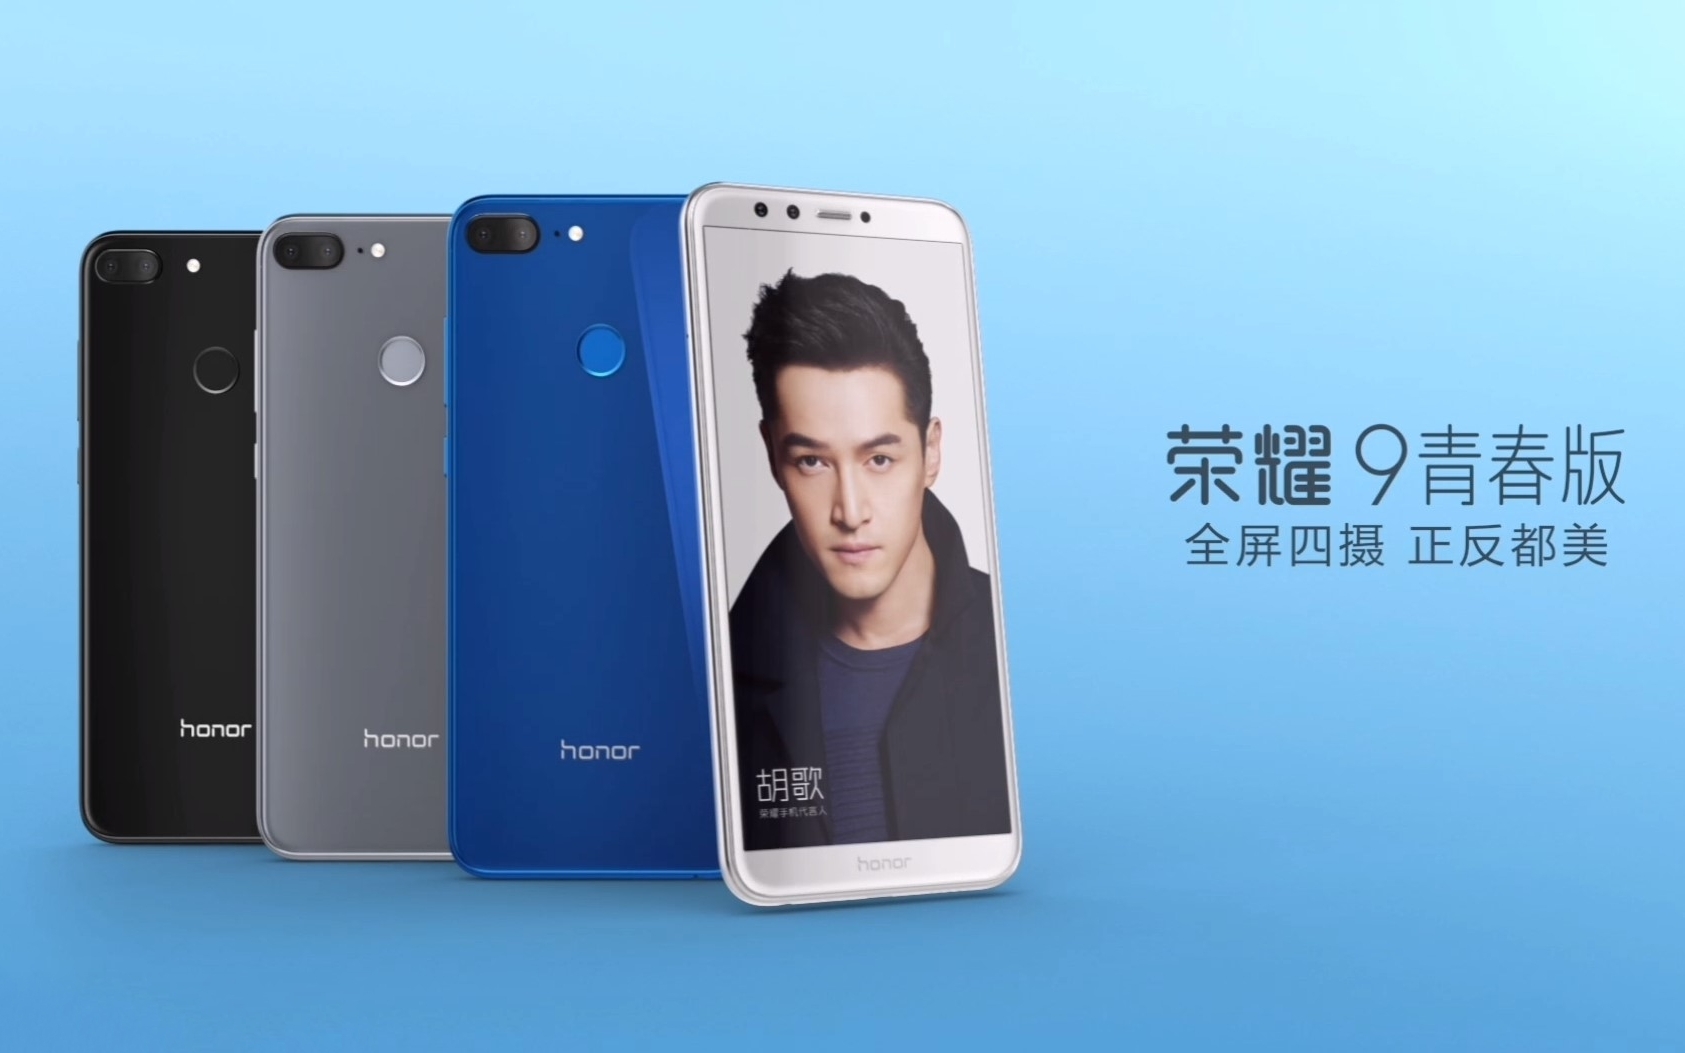 Honor 9 аккаунт. Телефон хонор у людей дома. Что выбрать Huawei Nova 9 или Honor 50 обзор.